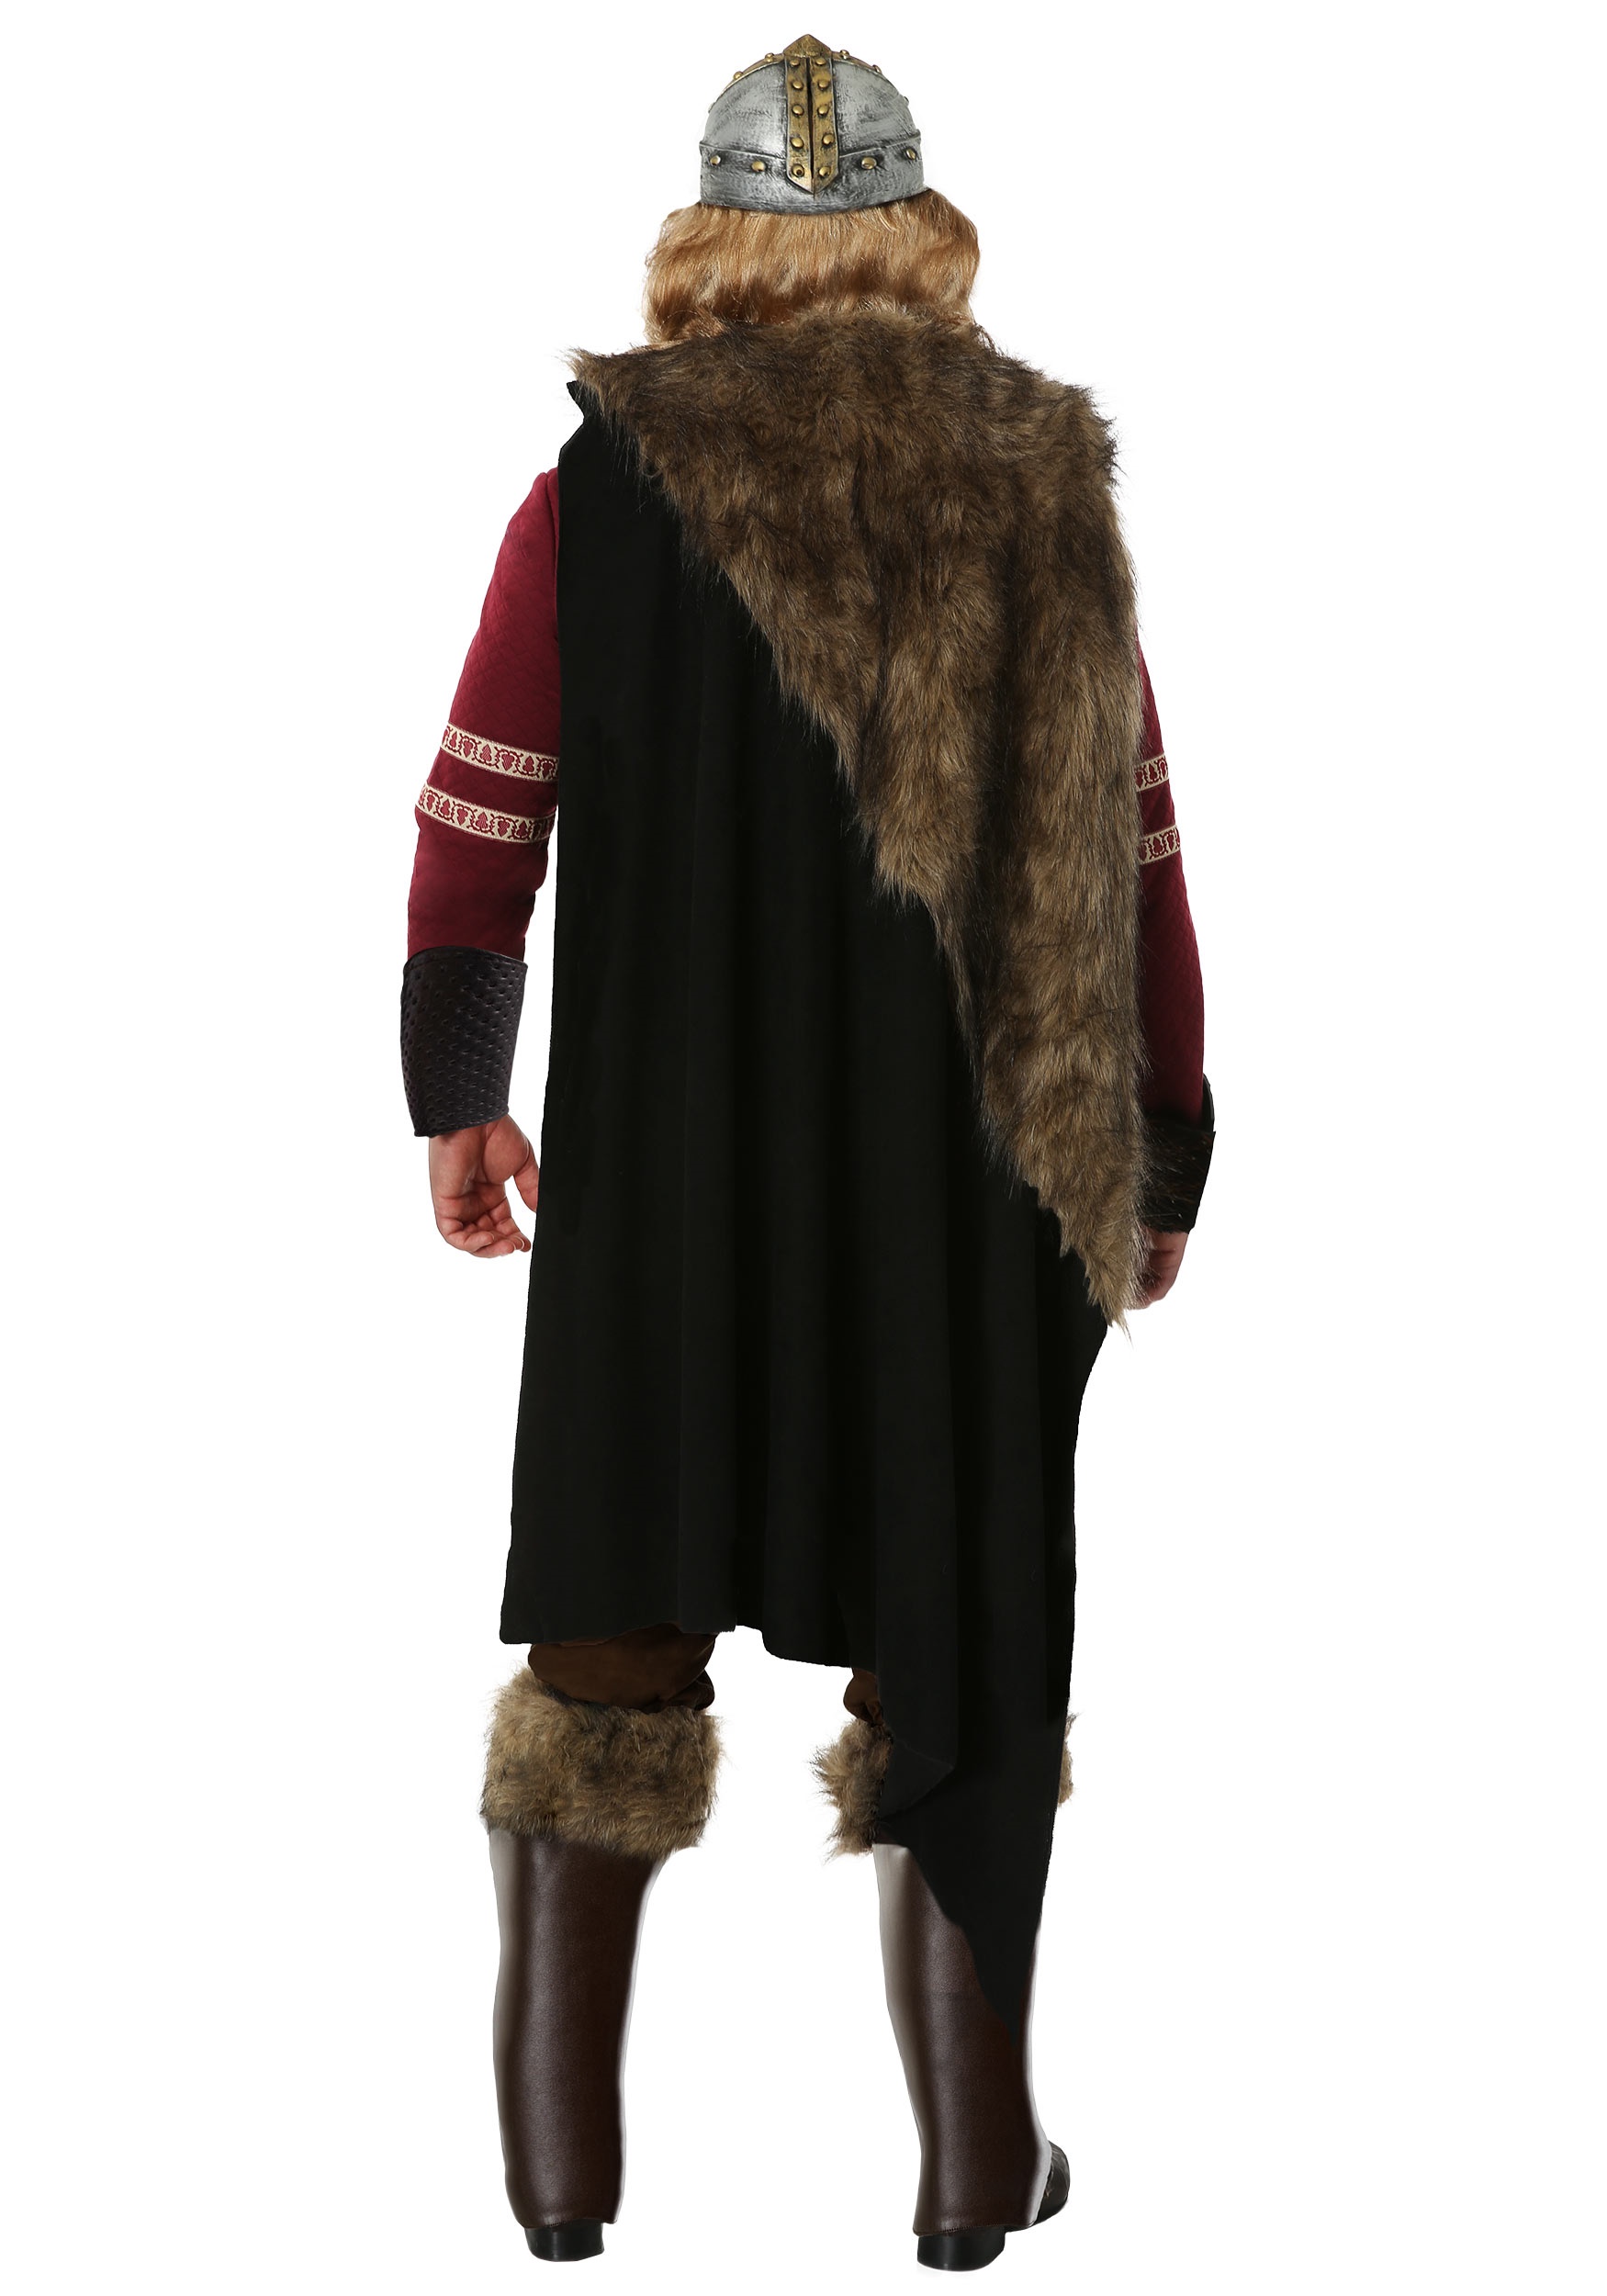 Burgundy Viking Men's Costume